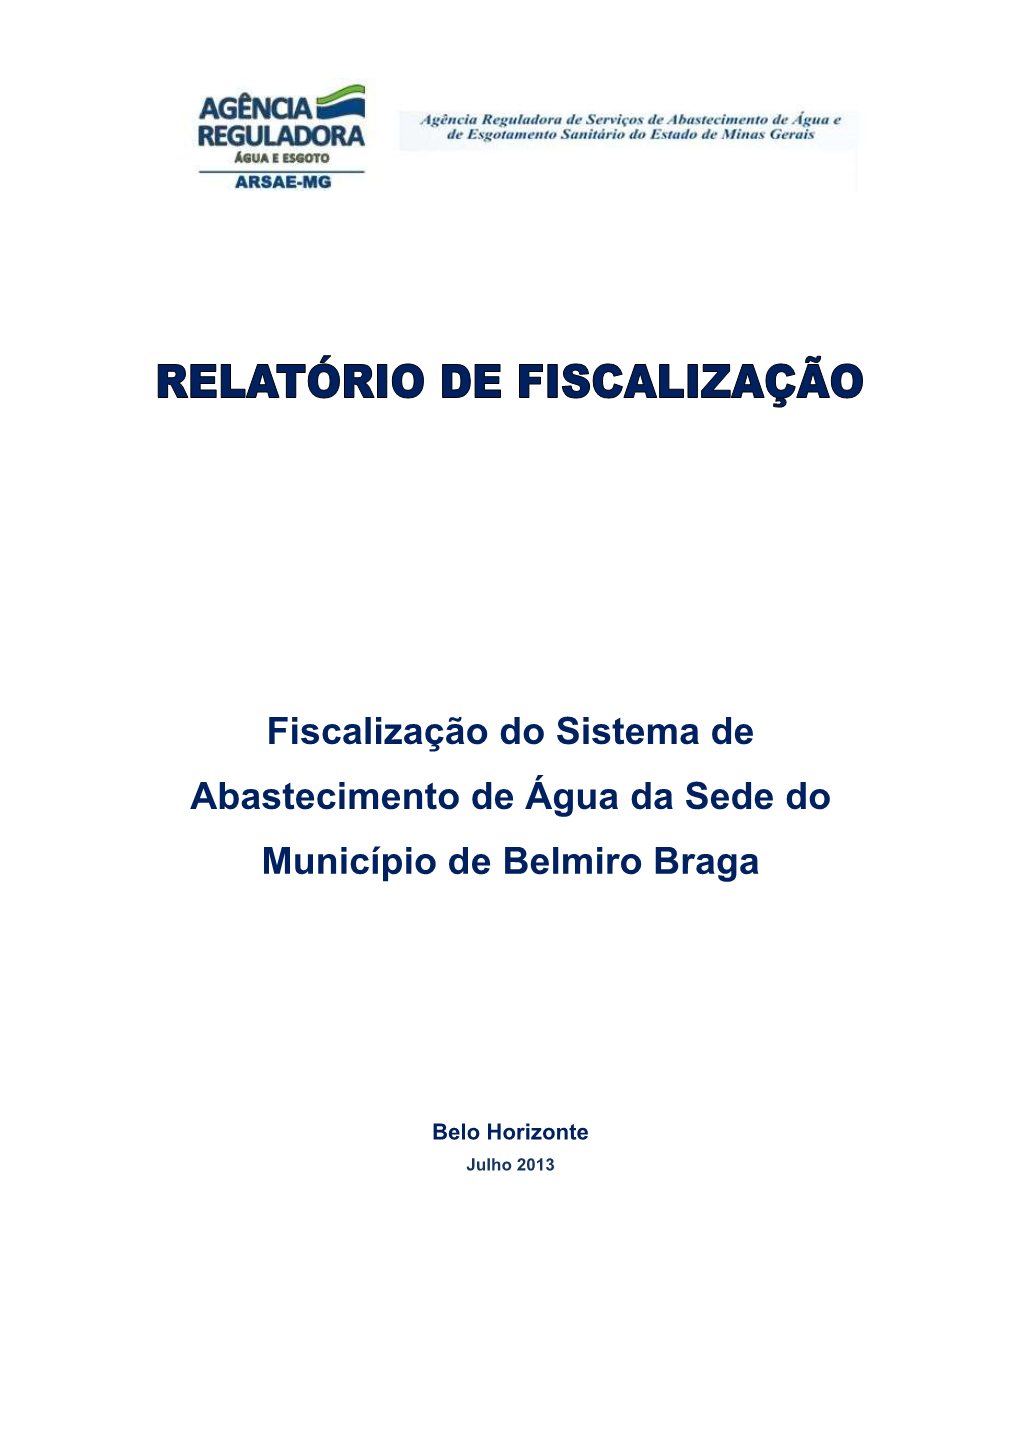 Fiscalização Do Sistema De Abastecimento De Água Da Sede Do Município De Belmiro Braga